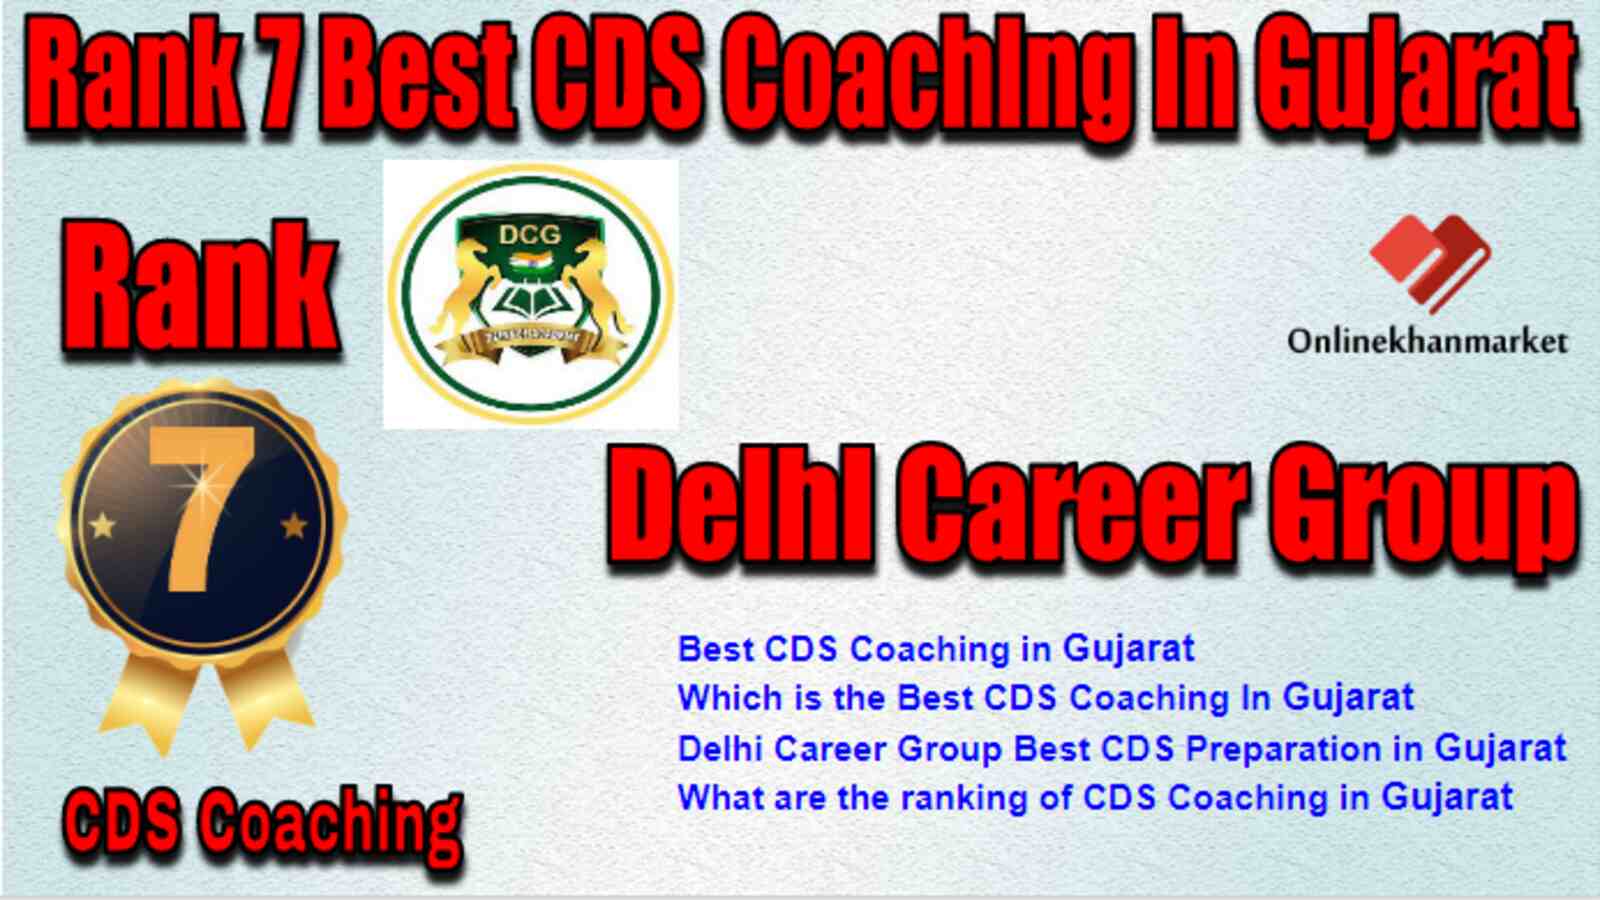 Rank 7 Best CDS Coaching in Gujarat